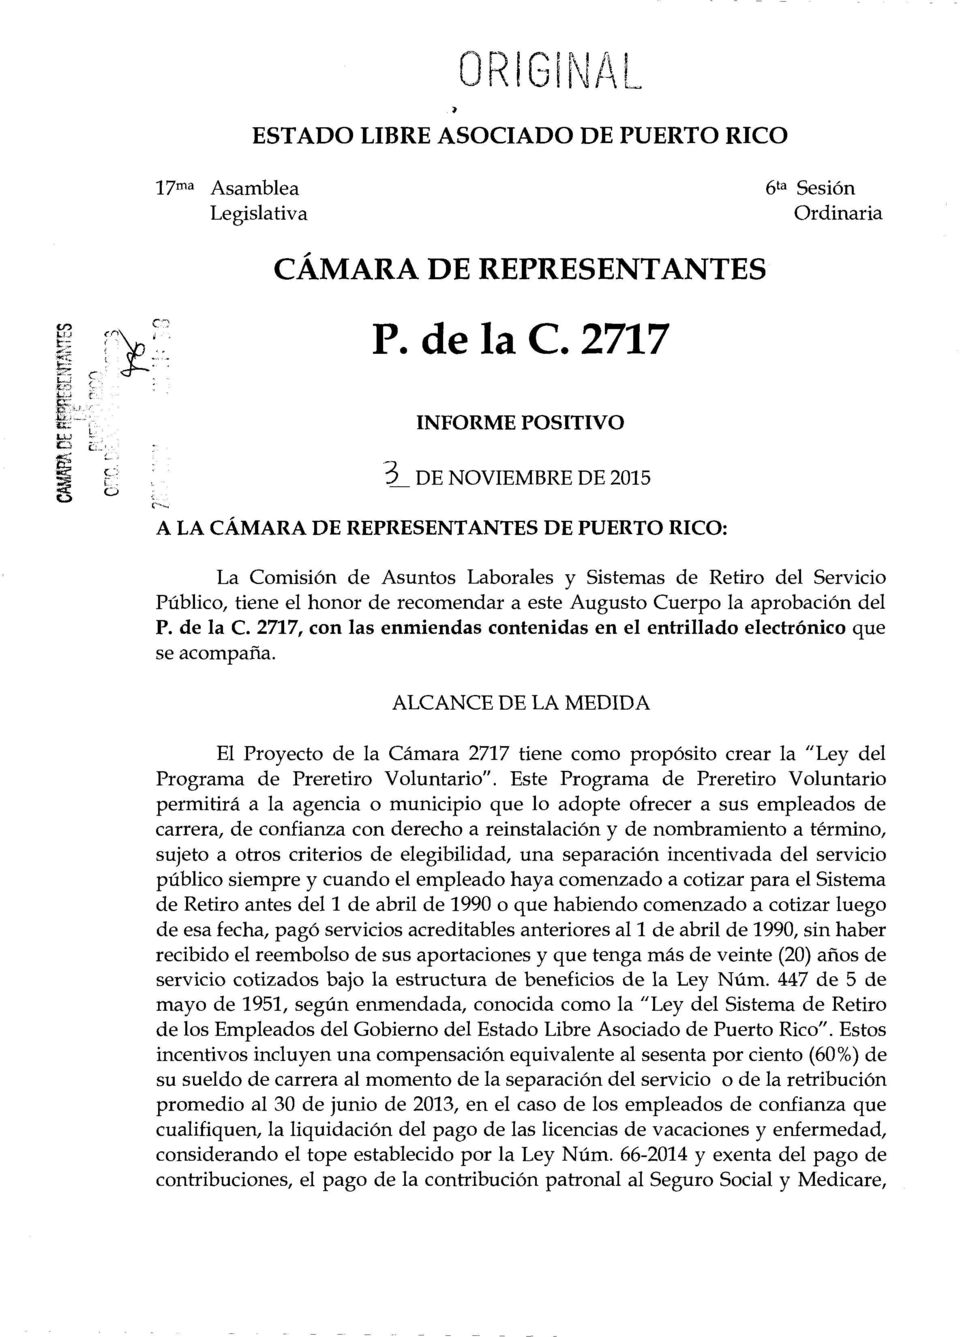 este Augusto Cuerpo la aprobaci6n del P. de la C. 2717, con las enmiendas contenidas en el entrillado electr6nico que se acompafia.